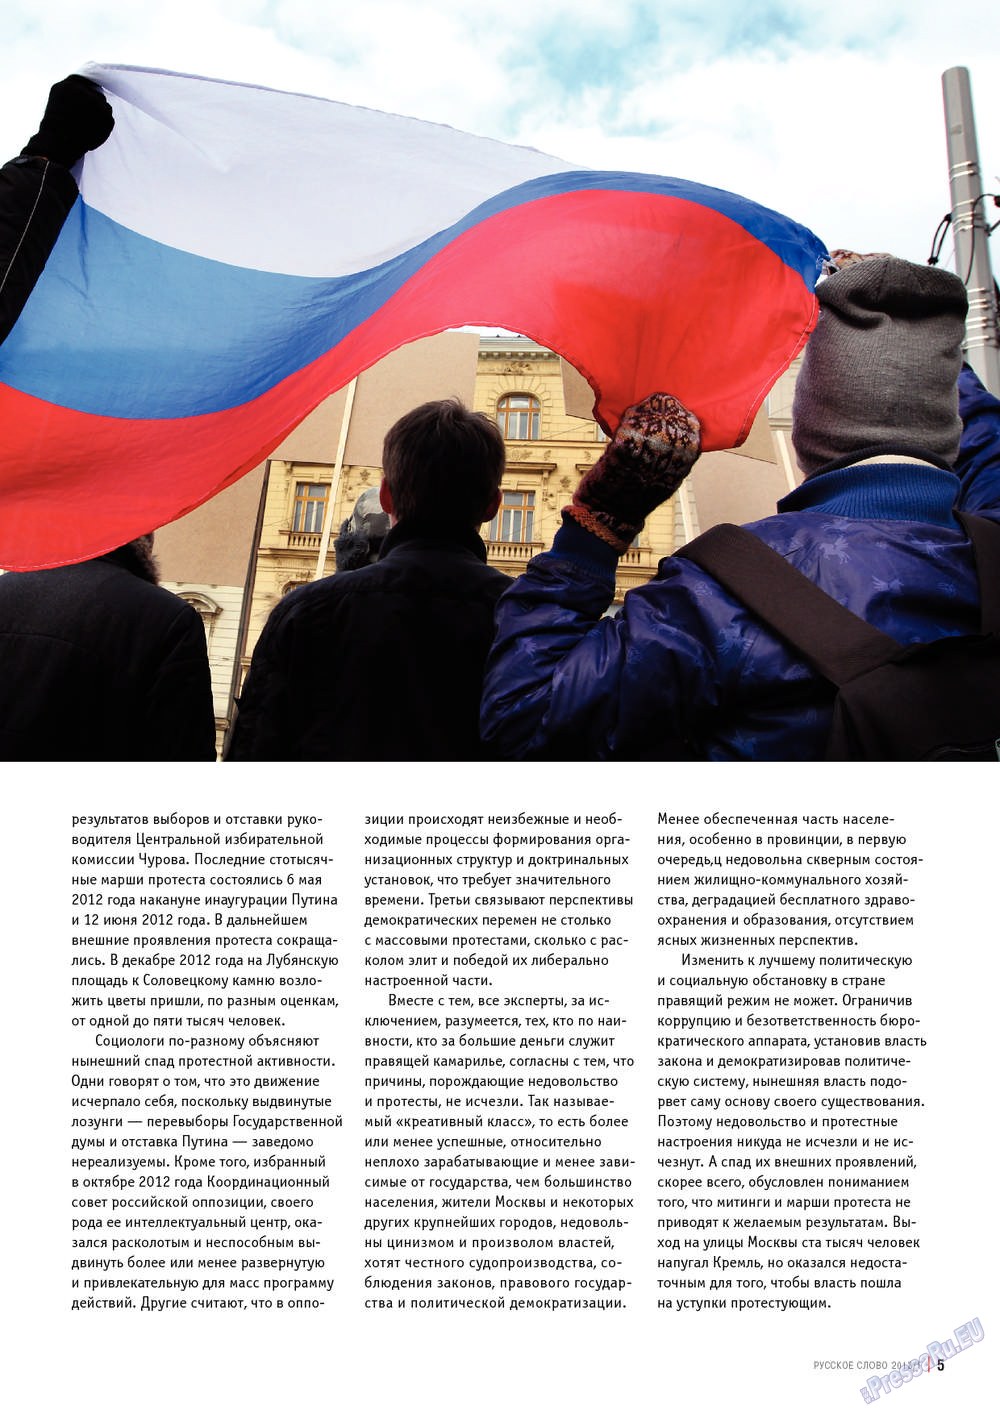 Русское слово, журнал. 2013 №1 стр.5